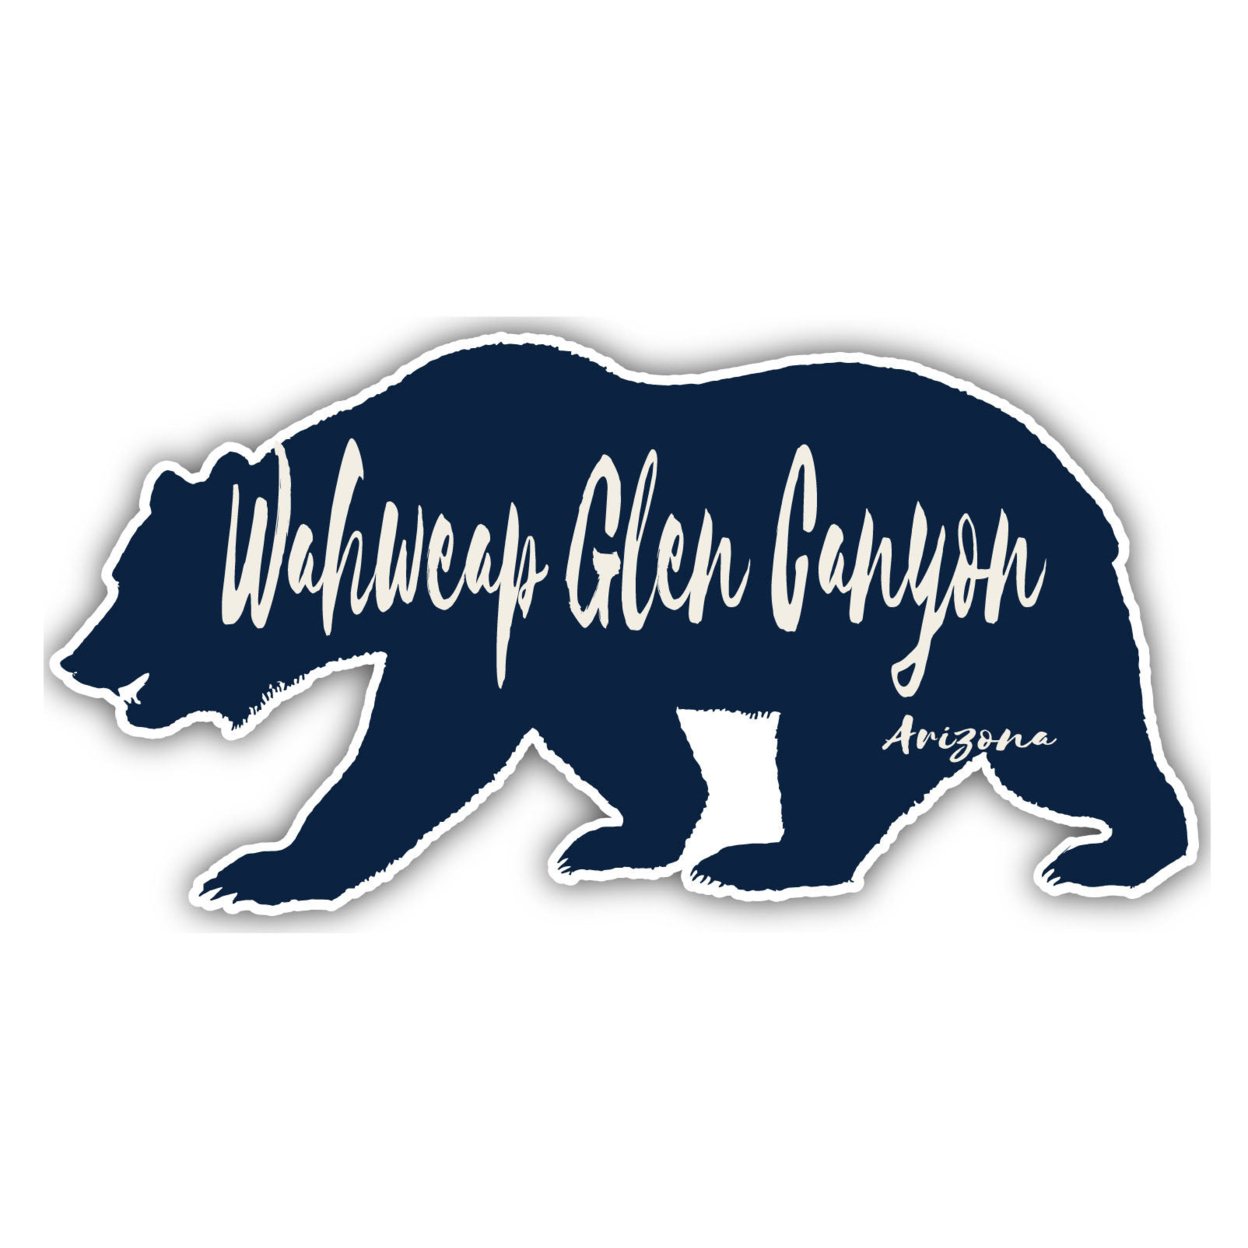 Wahweap Glen Canyon Arizona Souvenir Decorative Stickers (Choose Theme And Size) - Single Unit, 4-Inch, Bear